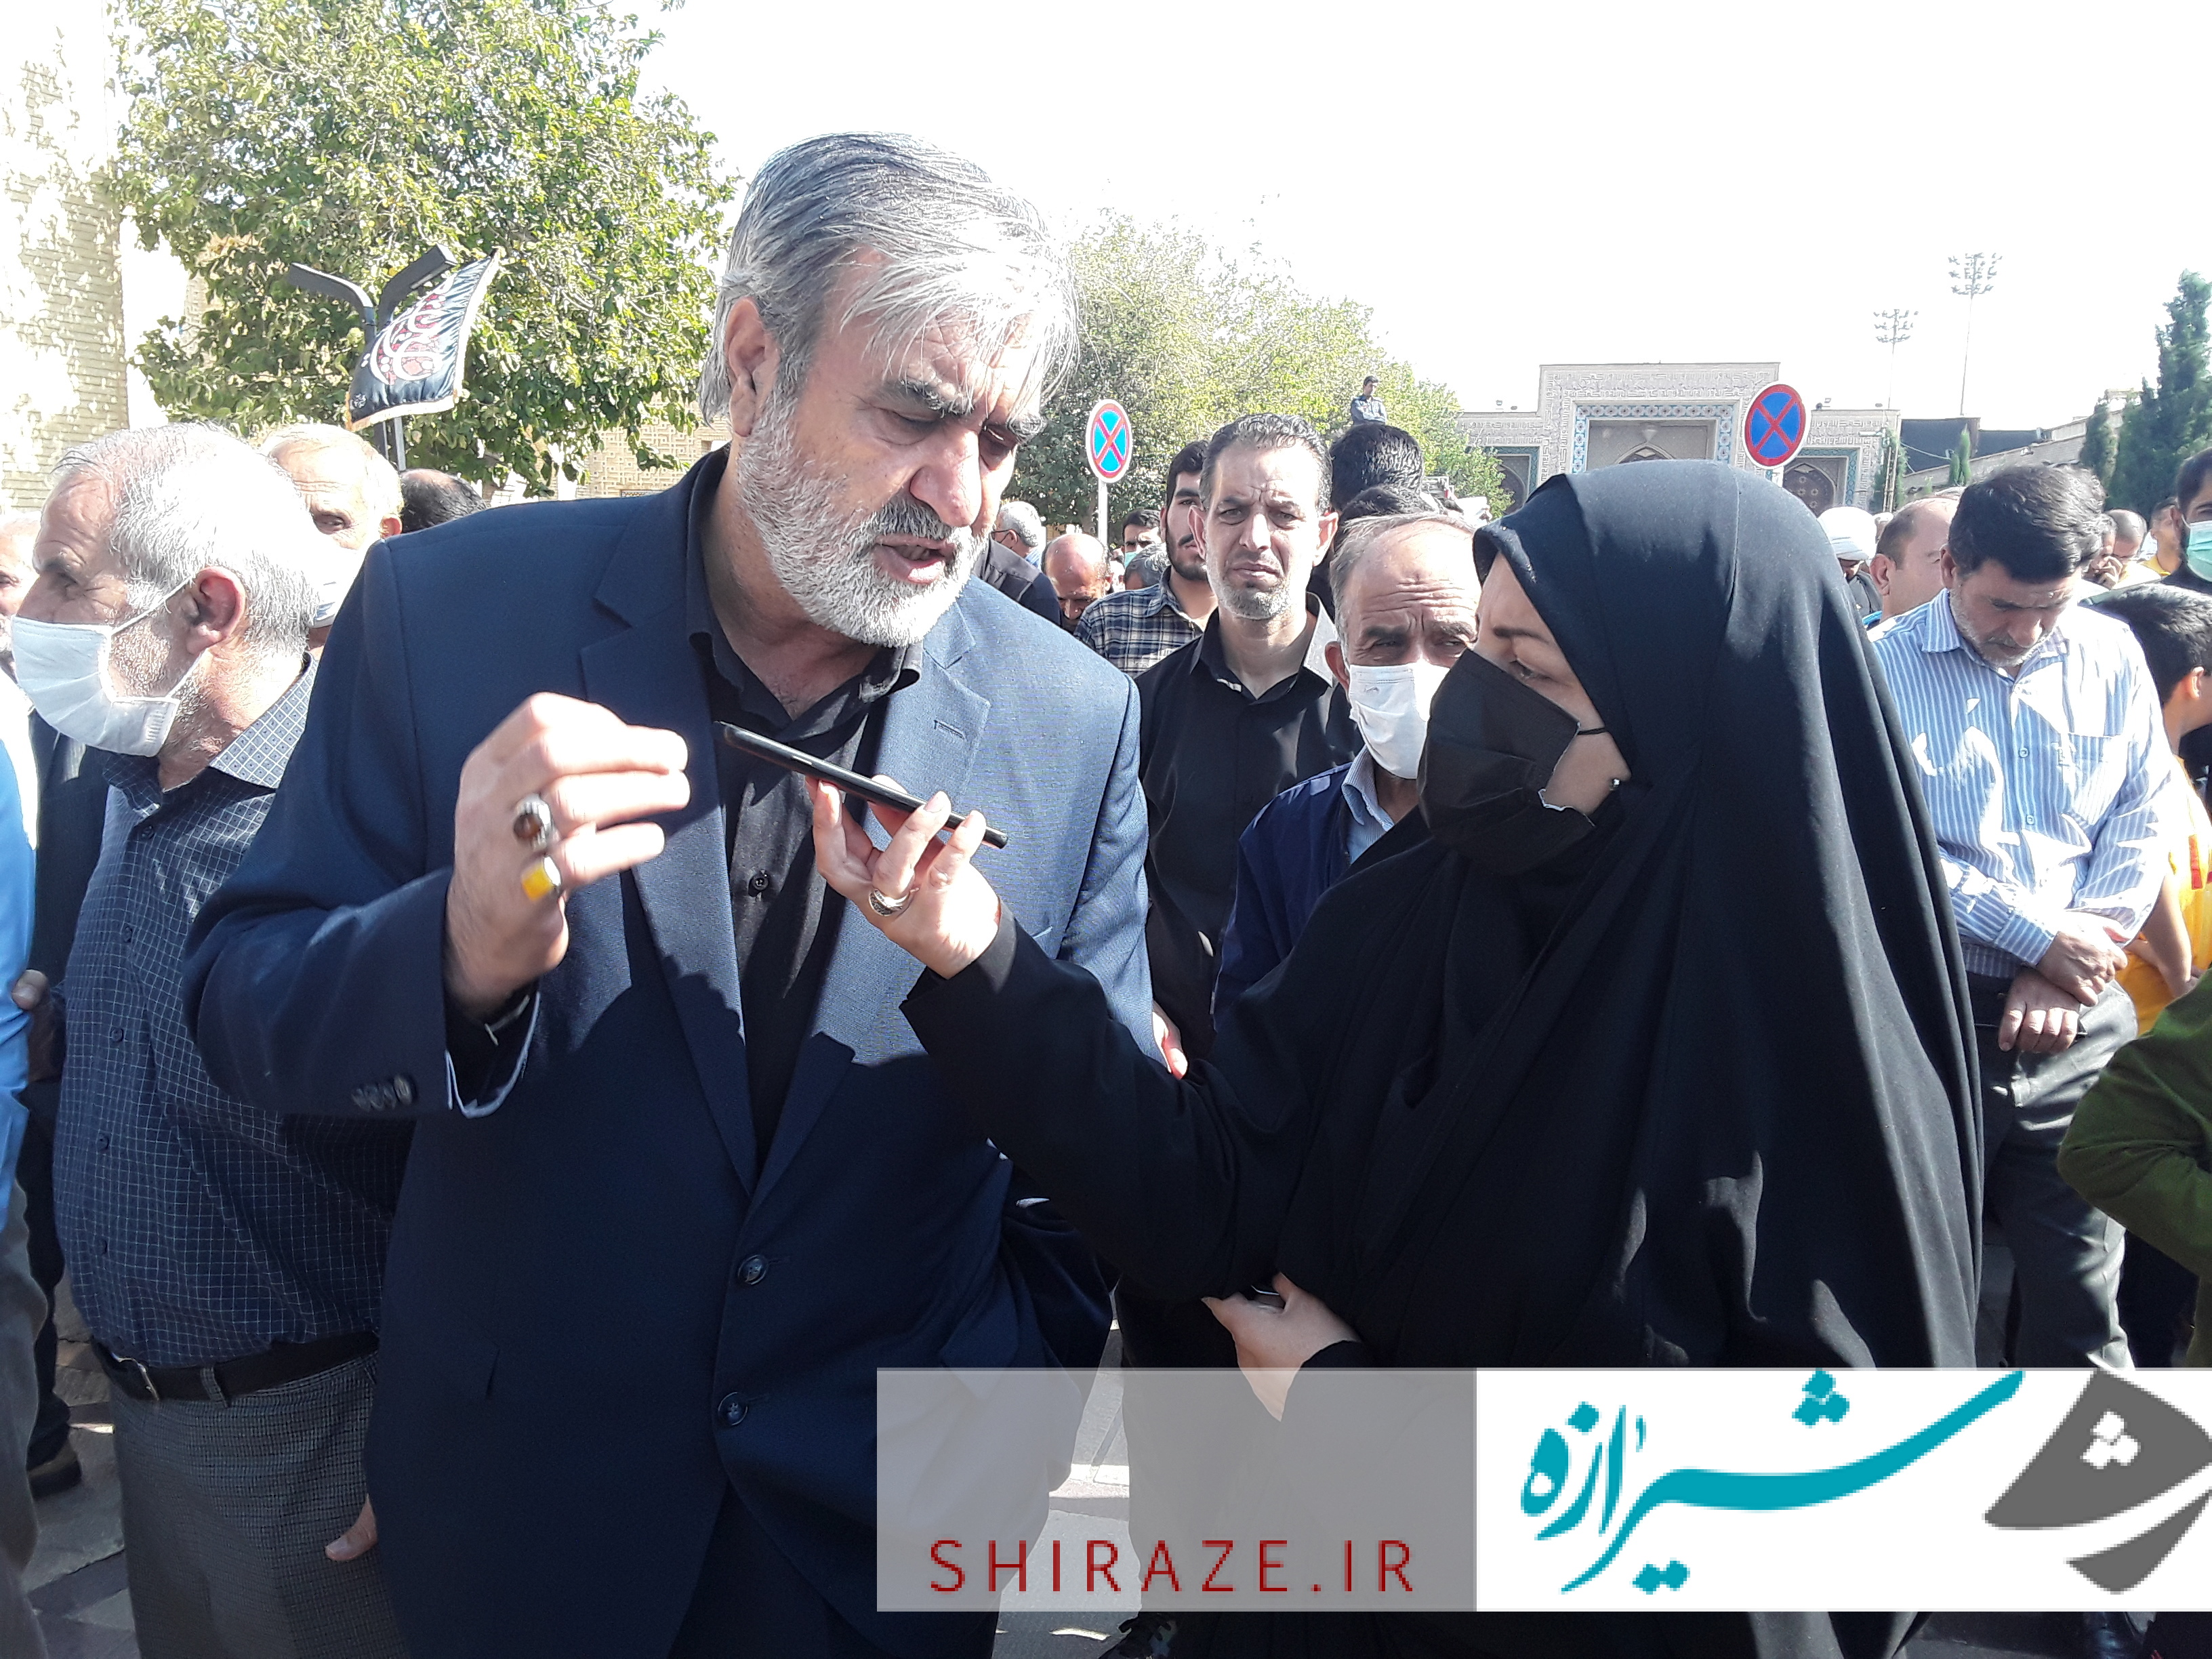 انتقام سخت و پشیمان کننده ای، پیش روی عاملان اصلی حادثه تروریستی شیراز است